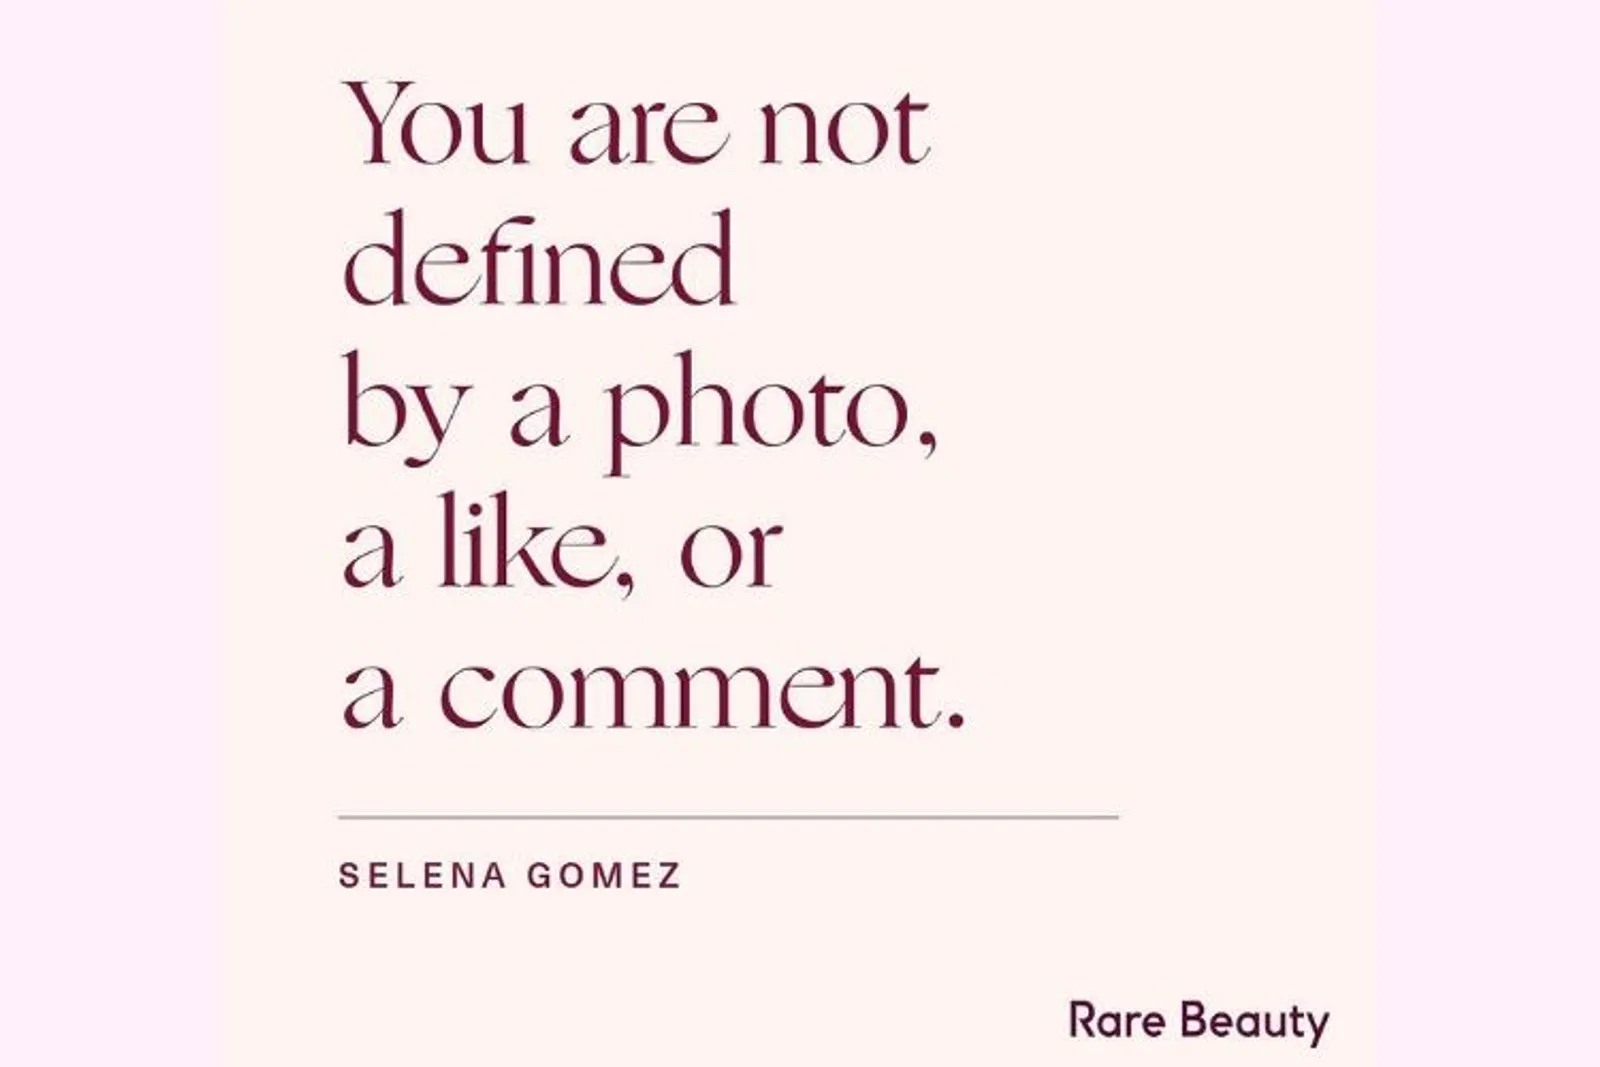 Rare Beauty, Bisnis Kecantikan dari Selena Gomez